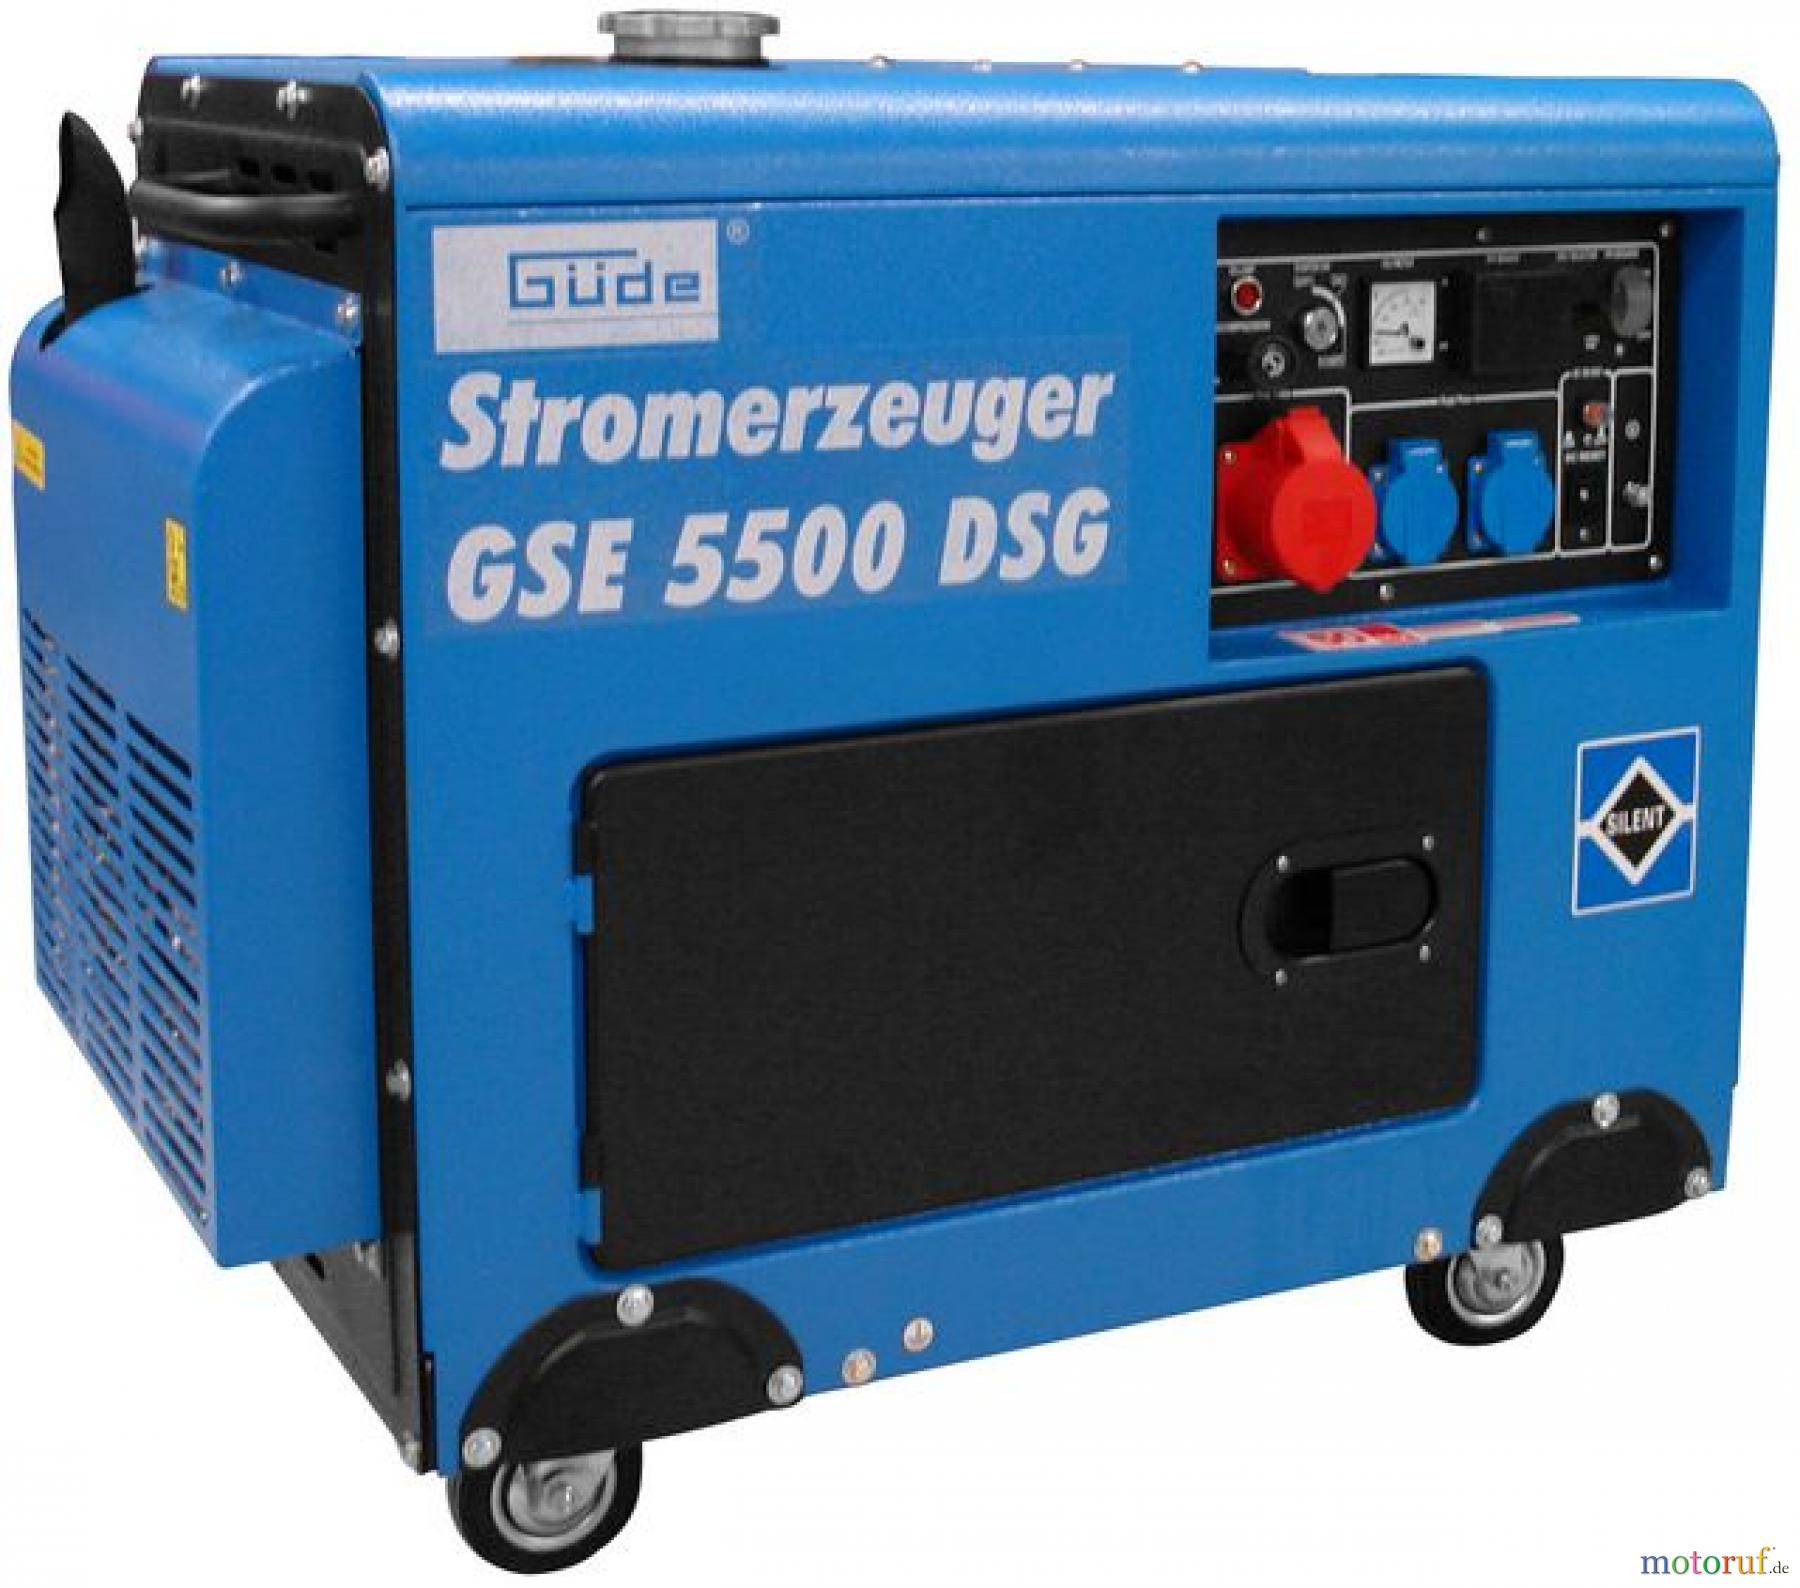  Güde Stromerzeuger Diesel-Stromerzeuger STROMERZEUGER GSE 5500 DSG - 40586